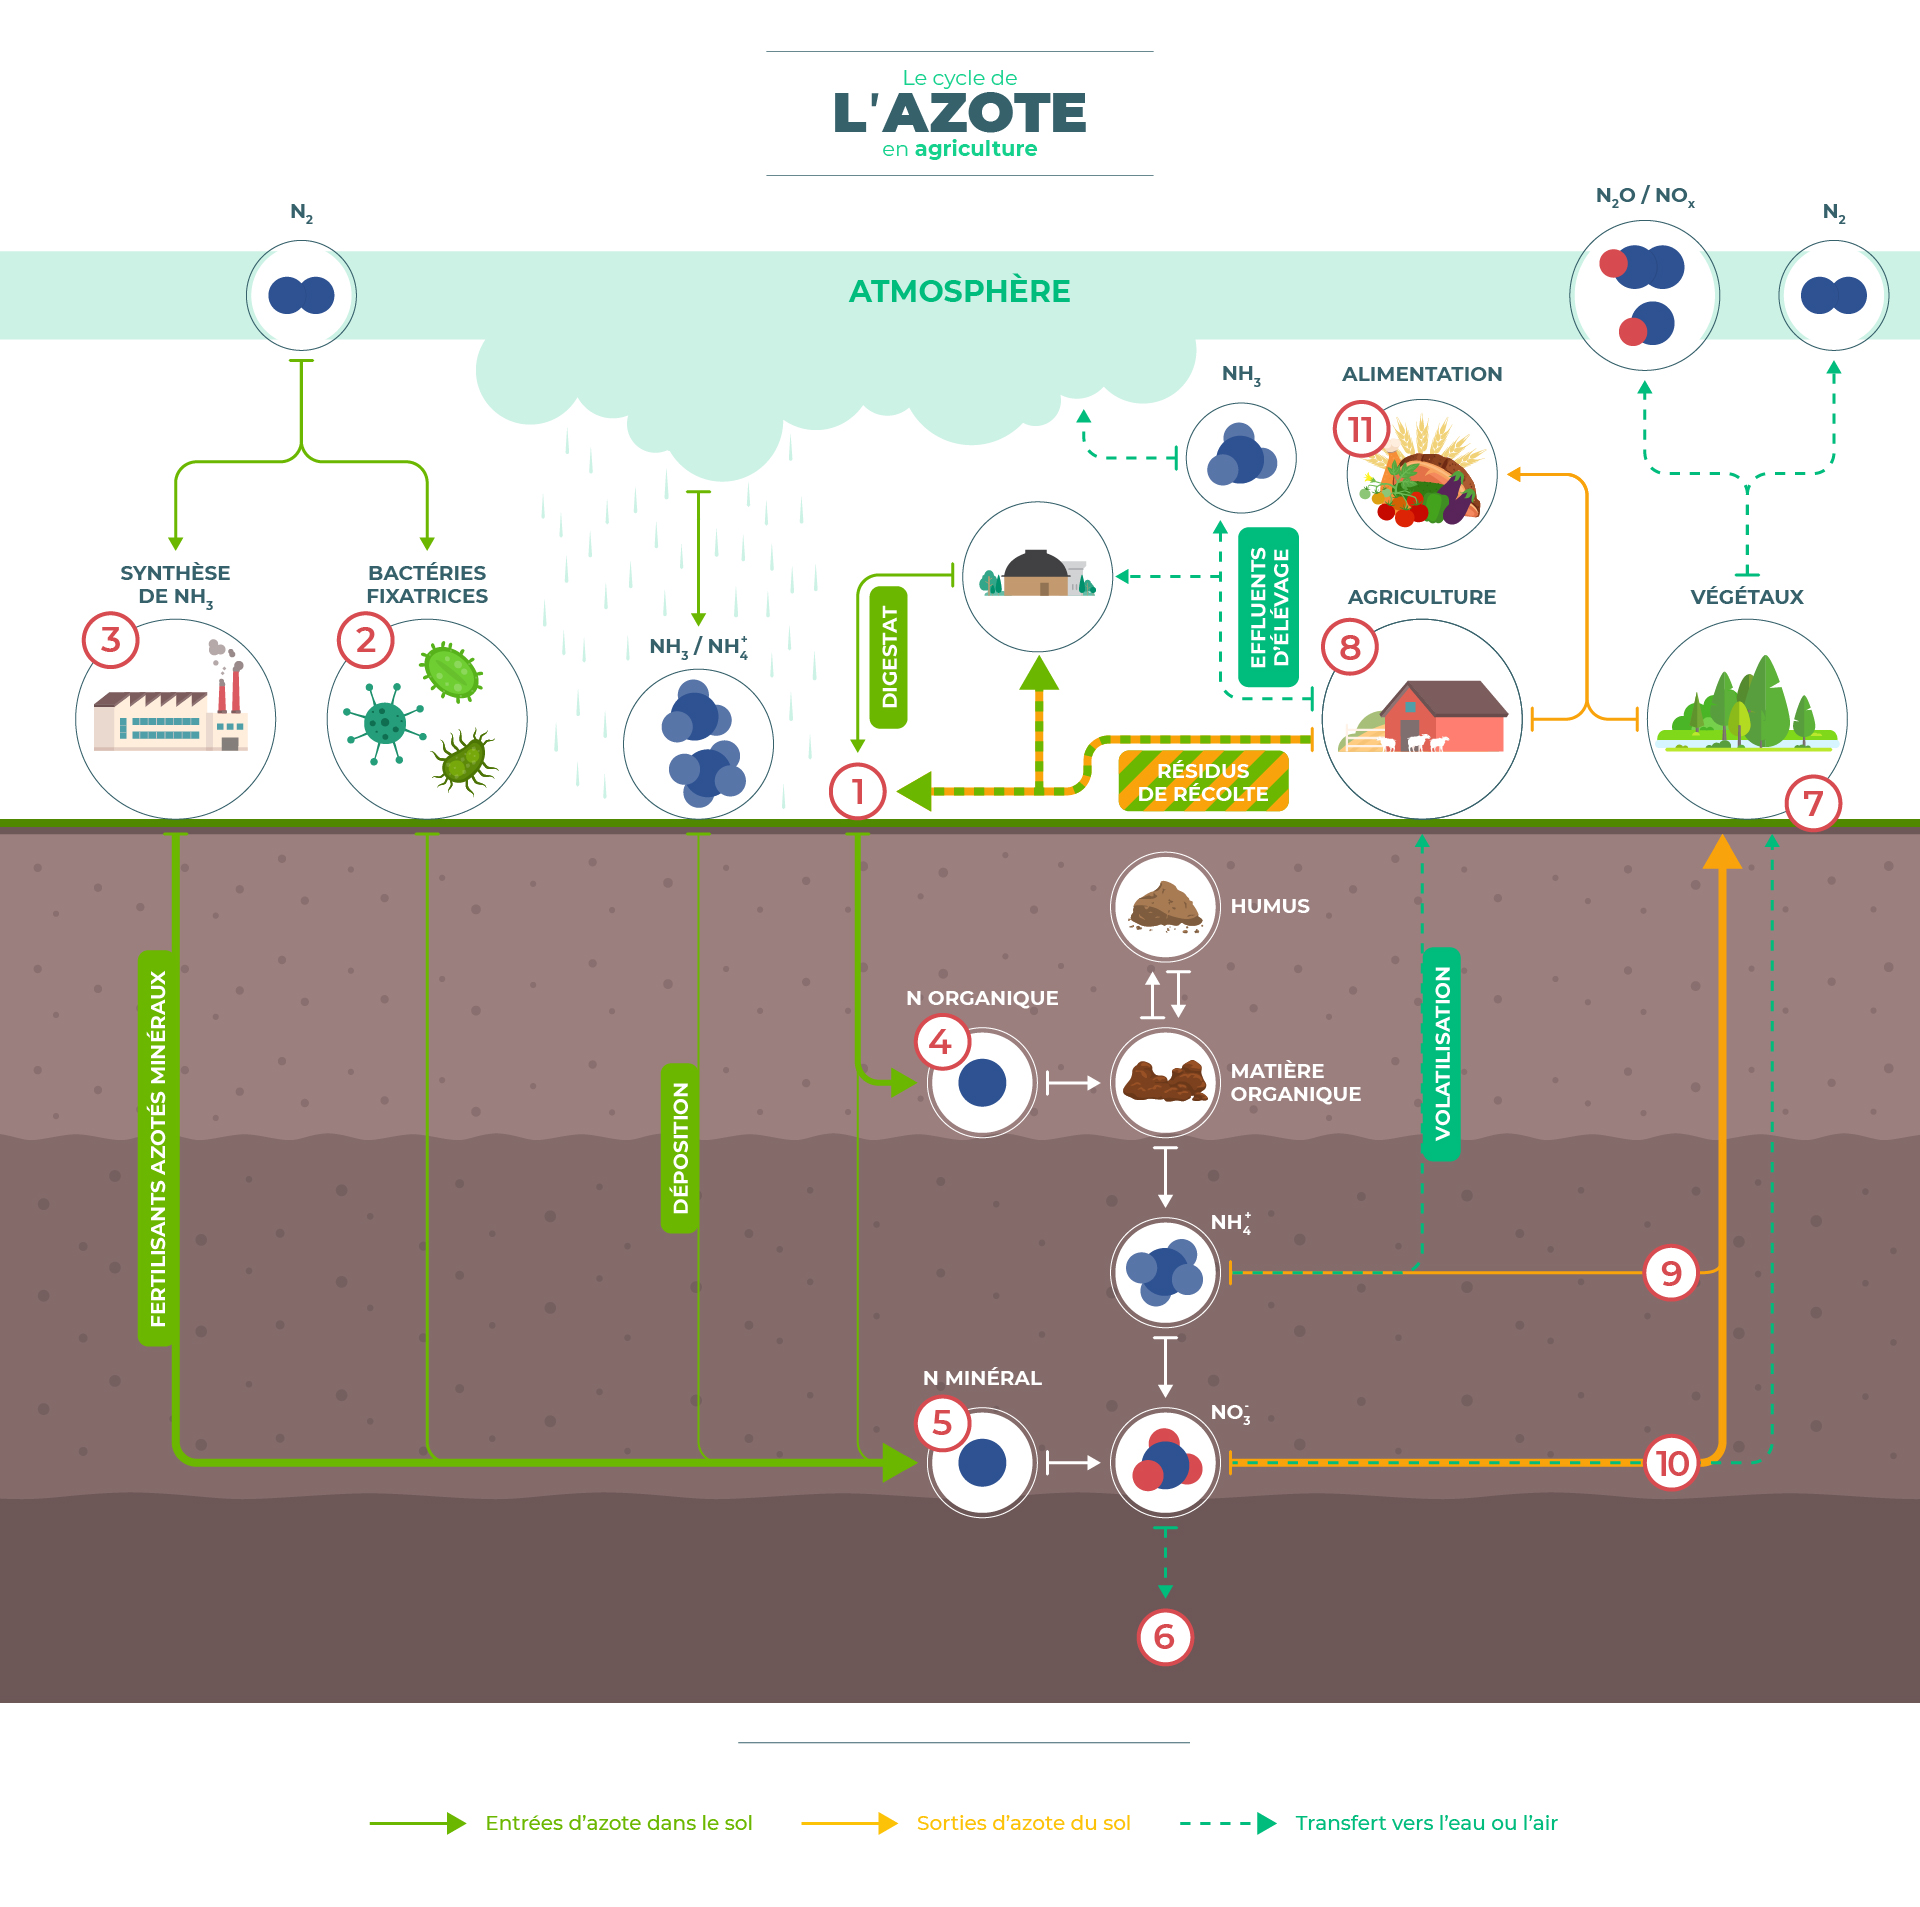 Le cycle de l'azote en agriculture V2